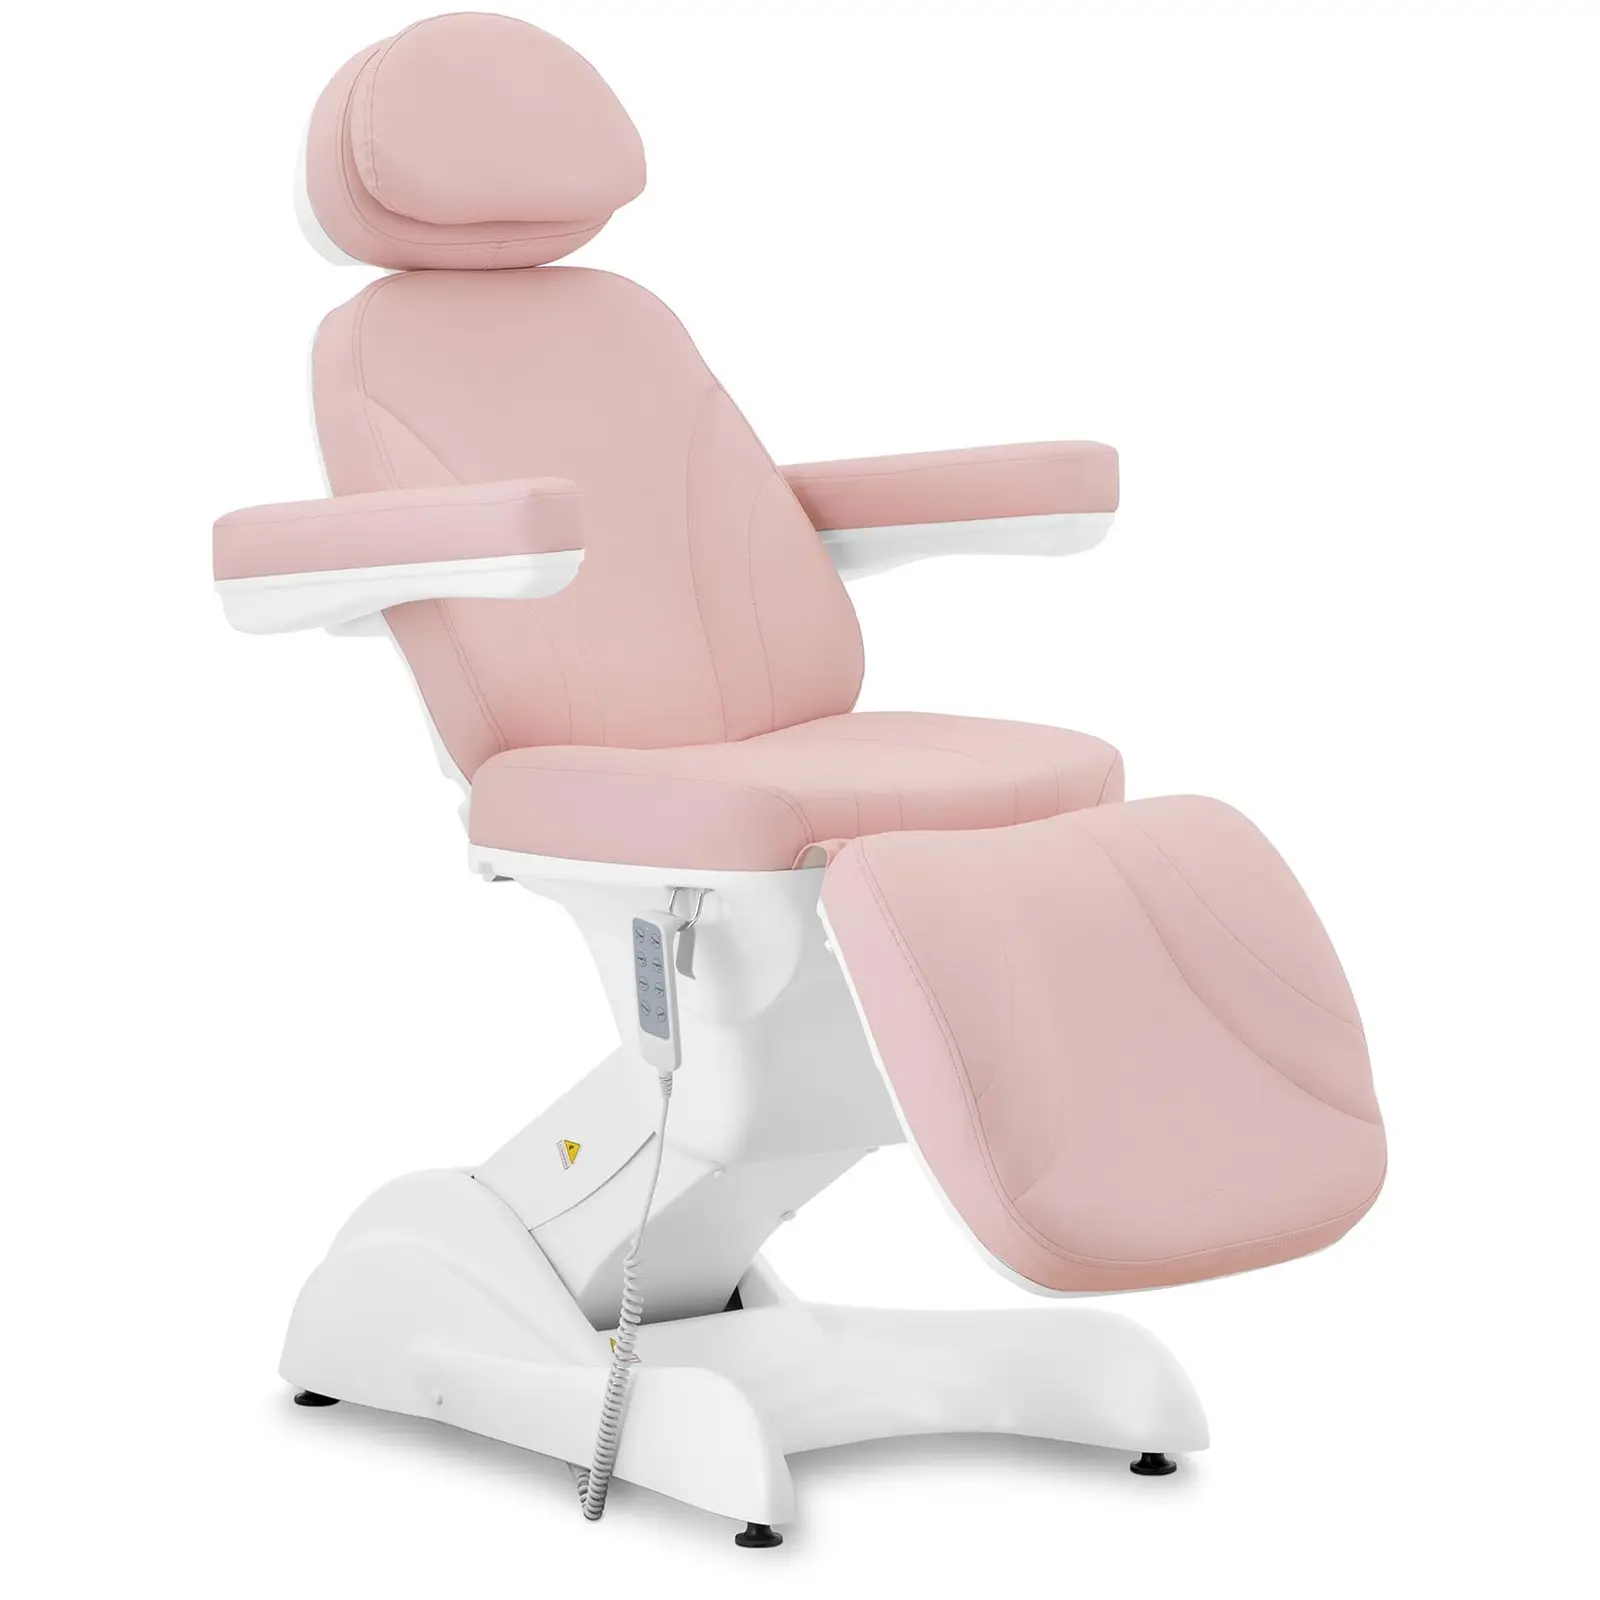 Cadeira de estética - 200 W - 150 kg - Pink, White